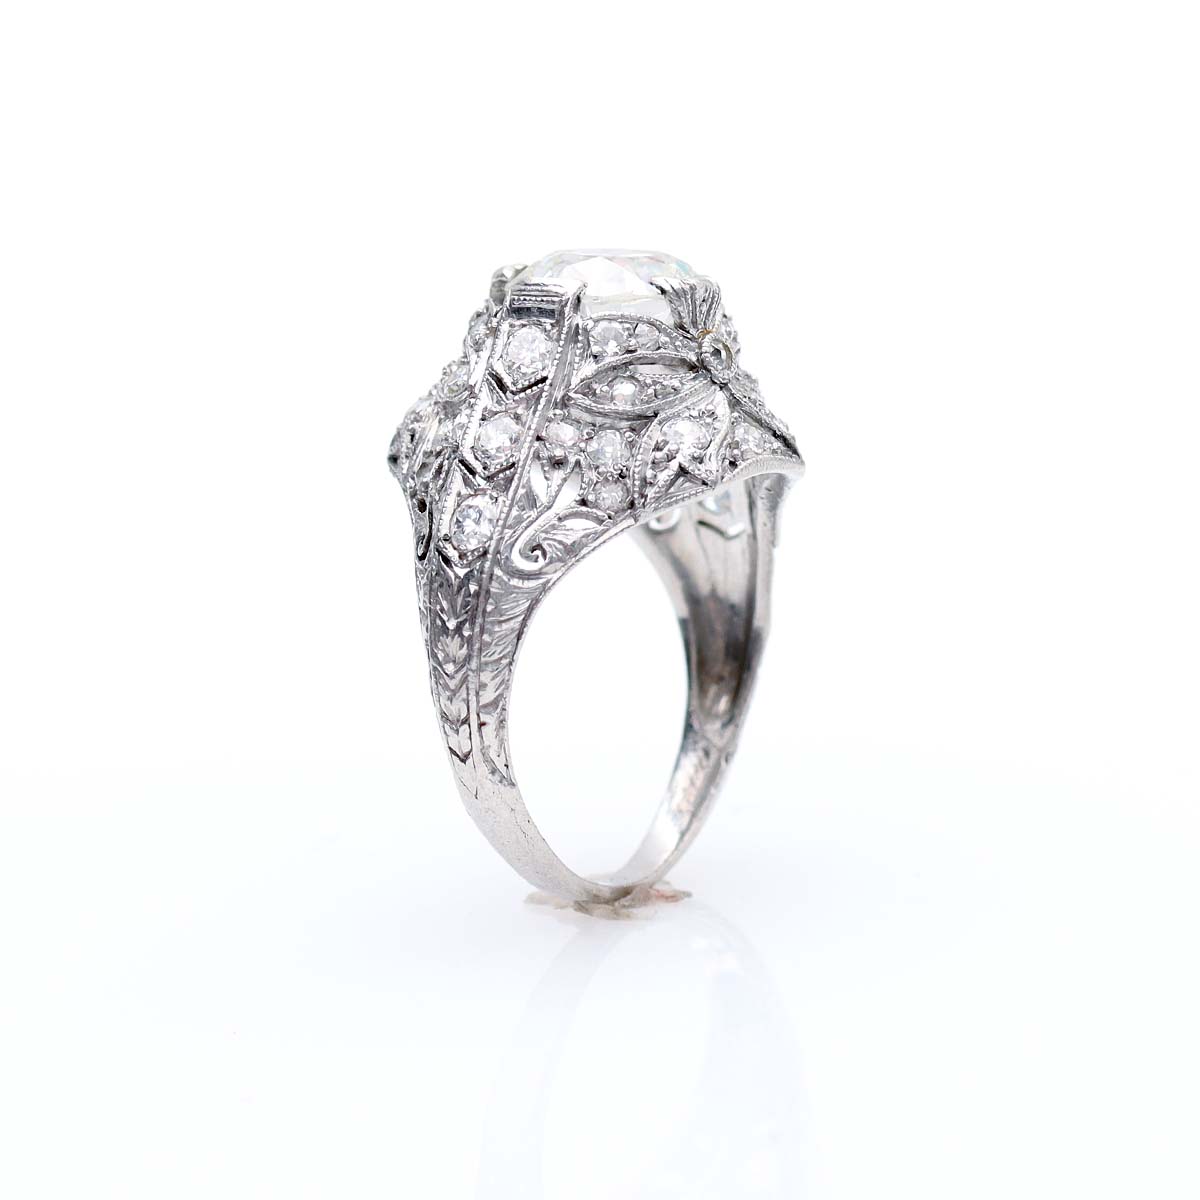 Vintage Art Deco Engagement Ring #VR230912